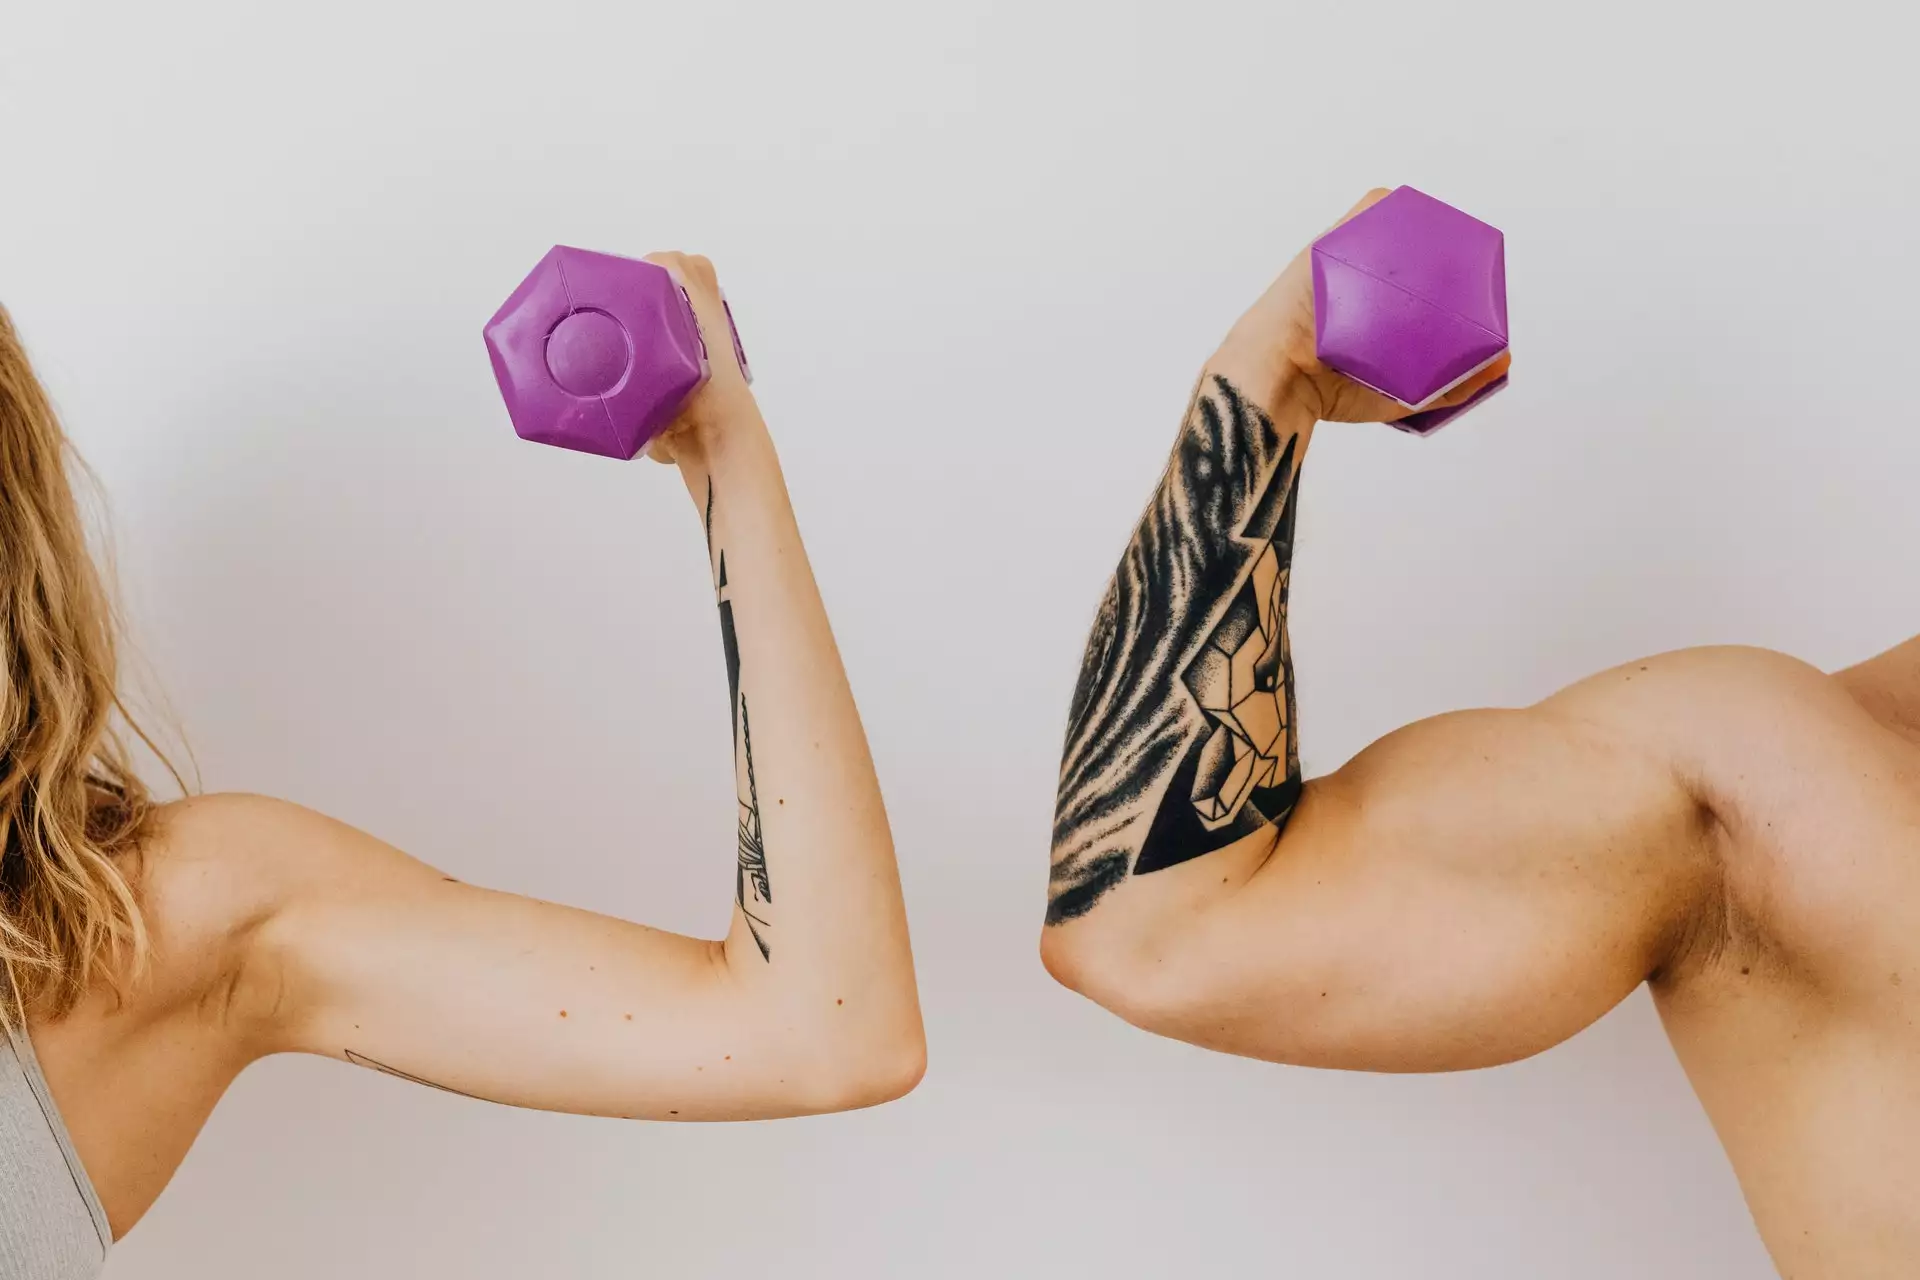 Les femmes doivent-elles faire de la musculation?